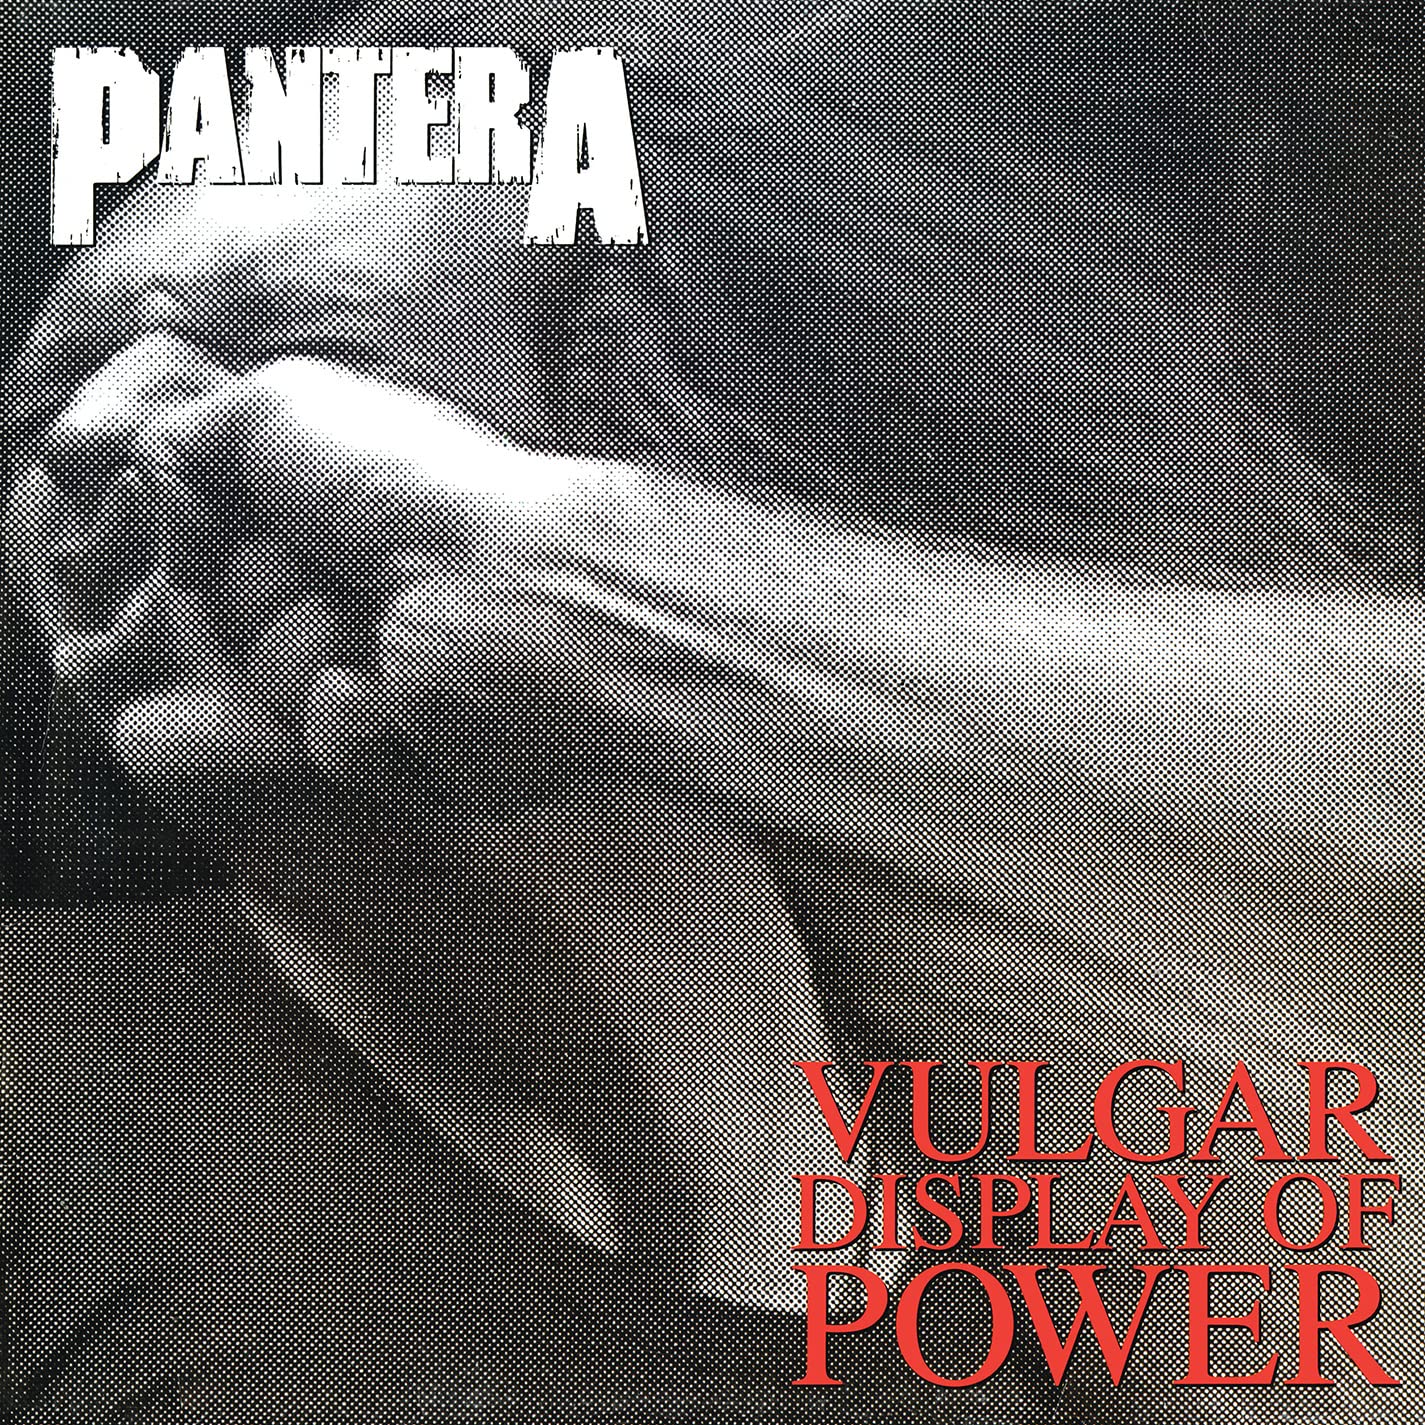 Vinile Pantera - Vulgar Display Of Power [Lp] (Marbled White & 'True Metal Grey' Vinyl, Limited, Brick & Mortar Exclusive) NUOVO SIGILLATO, EDIZIONE DEL 23/04/2021 SUBITO DISPONIBILE